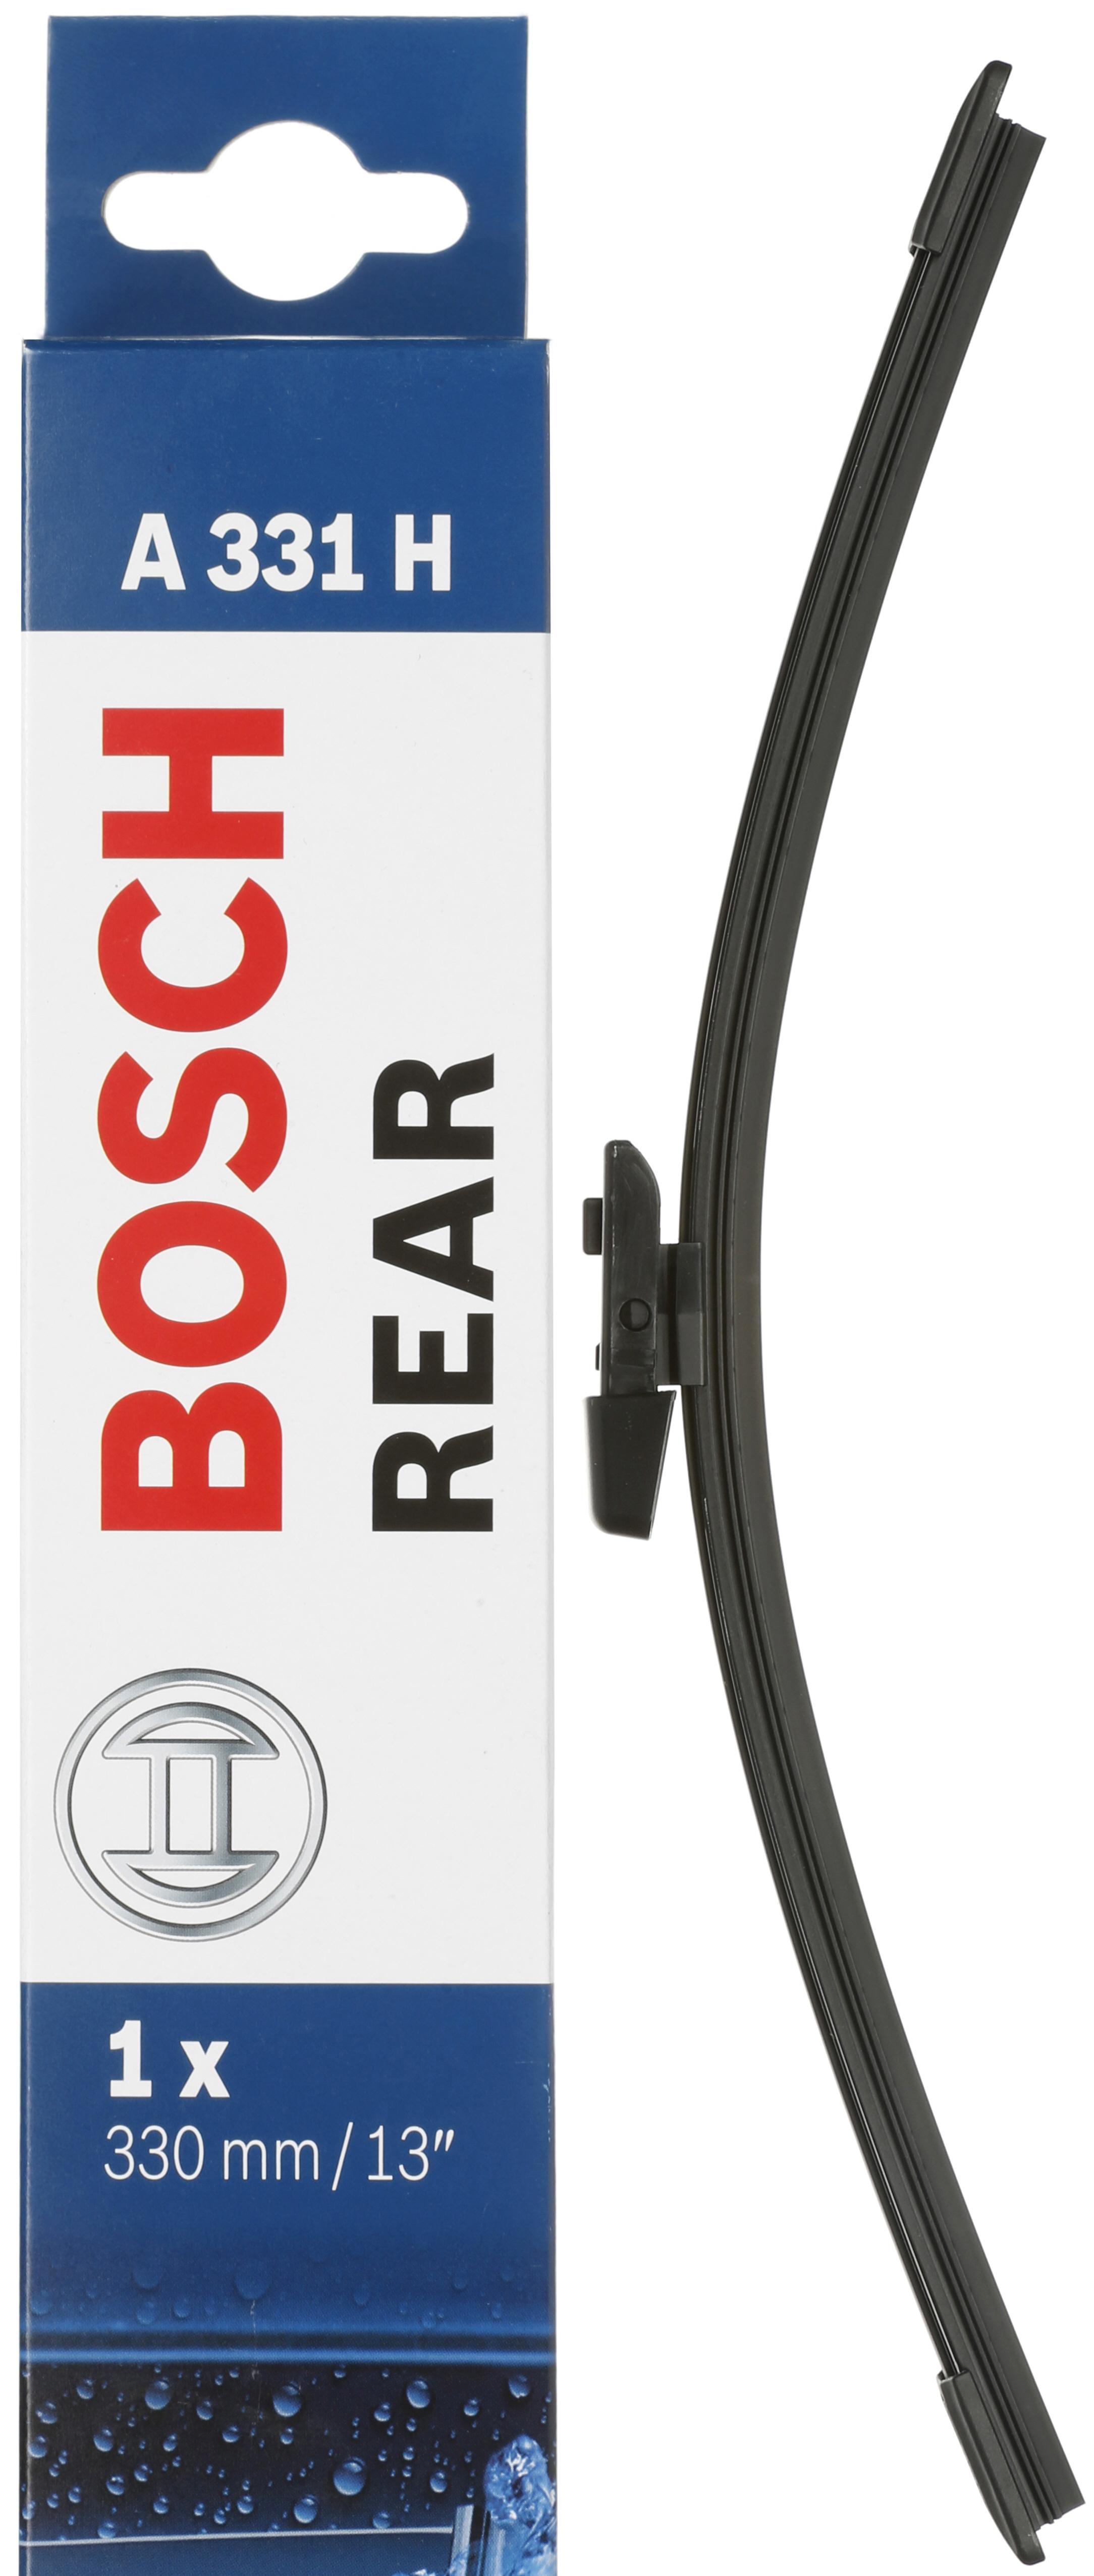 Bosch A331H Wiper Blade - Single